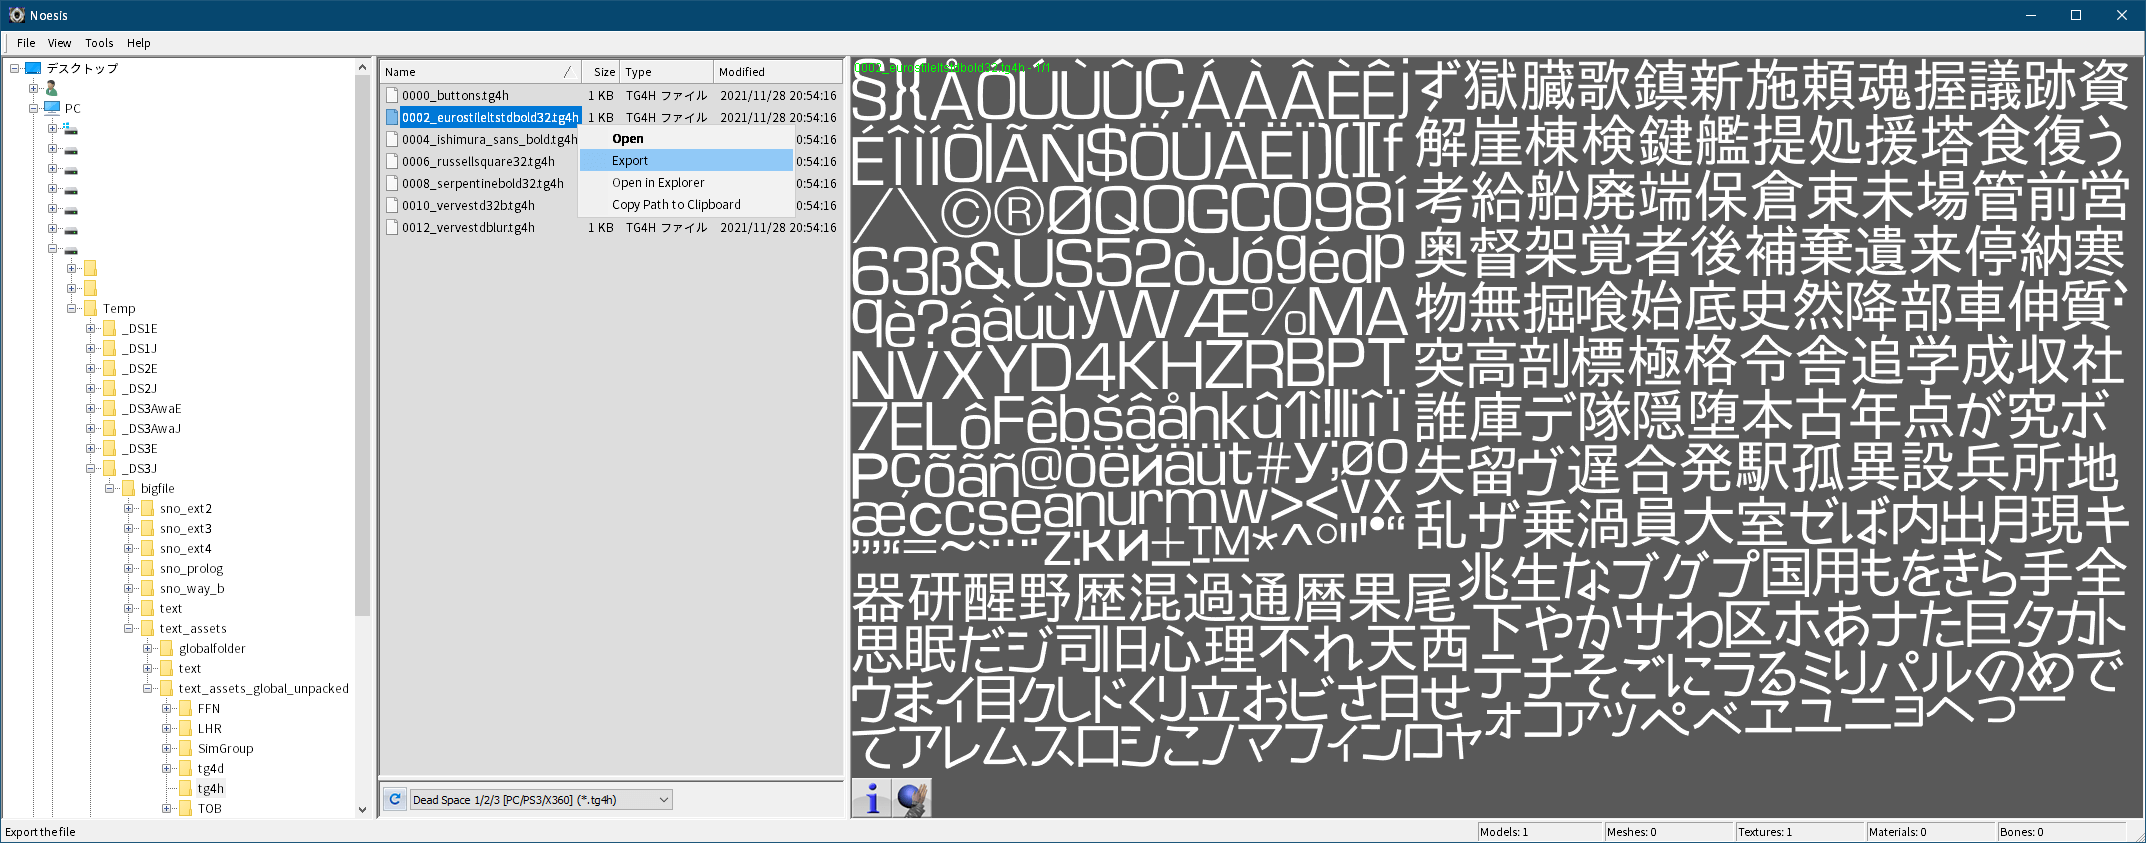 PC ゲーム旧版 DEAD SPACE シリーズ（2008～2013）日本語化ファイル解析情報、PC ゲーム DEAD SPACE 3（2013）日本語化ファイル解析メモとアンパック・解析データ公開、Noesis ツールを使ったビットマップフォント（tg4h と tg4g ファイル）エクスポート方法、Noesis をダウンロードして展開・解凍、XeNTaX からダウンロードした tex_DeadSpace123_PC_PS3_X360_tg4h.py ファイルを plugins\python フォルダに配置後、Noesis.exe か Noesis64.exe を実行して起動、Noesis が起動したらアンパックした text_assets_global.str の tg4h フォルダに移動、画像中央下にあるドロップダウンリストで Dead Space 1/2/3 [PC/PS3/X360] (*.tg4h)が選択されている状態で tg4h ファイルをダブルクリックすると、画面右側にフォントテクスチャのプレビュー画像が表示、フォントテクスチャをエクスポートしたい場合は tg4h ファイルを右クリック → Export を選択、Main output type でエクスポートしたいファイル形式が選択可能、Export ボタンをクリックすると指定した場所にエクスポート（デフォルトは tg4h ファイルと同じフォルダ内にエクスポート）